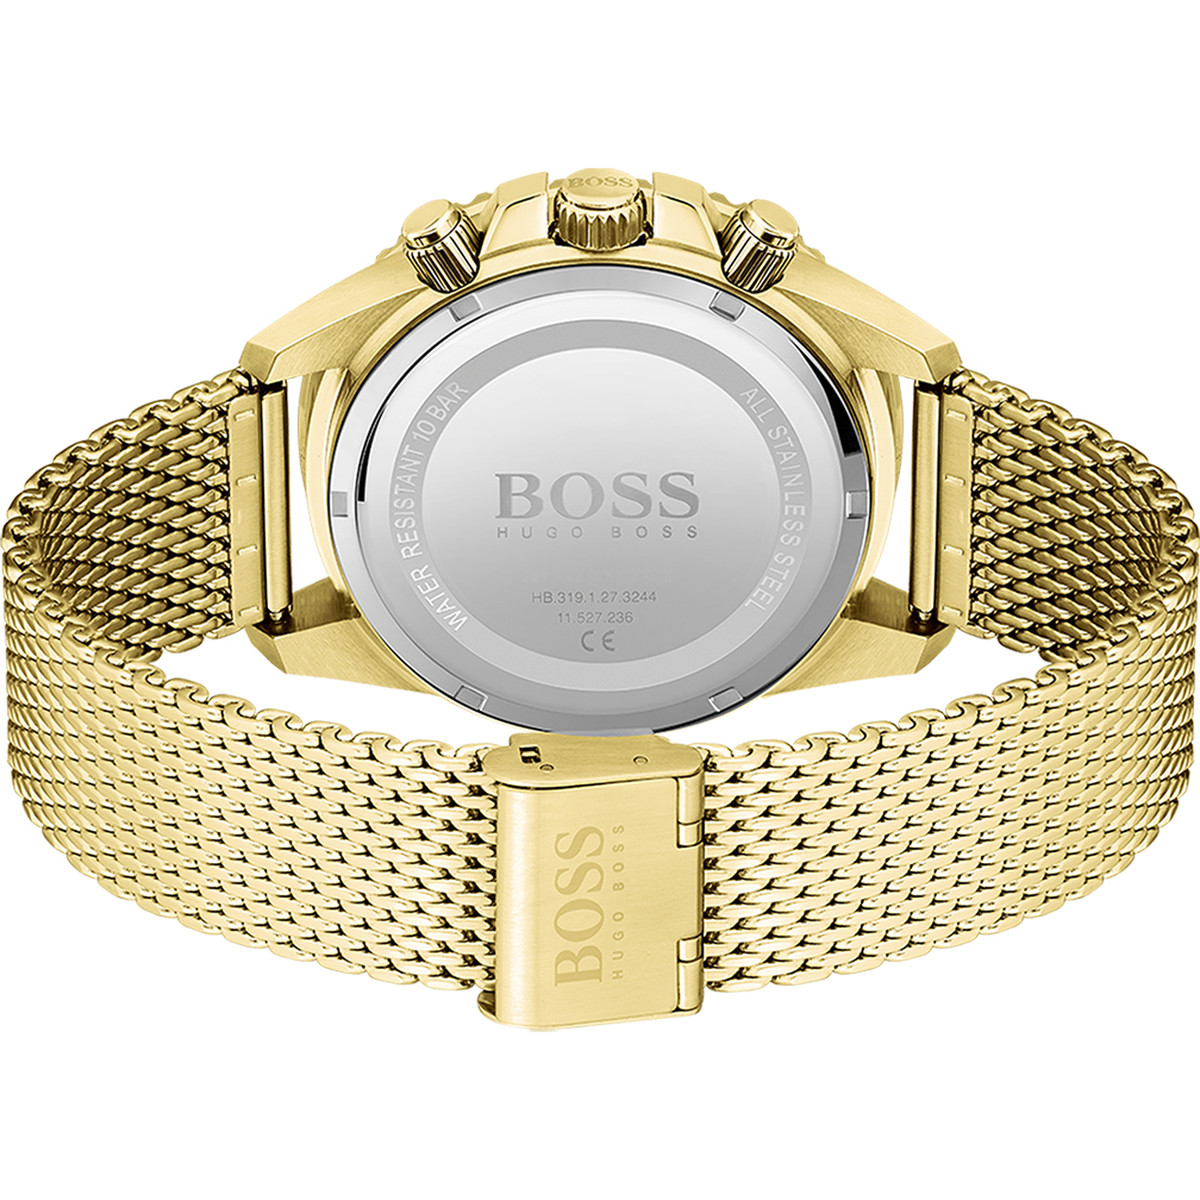 Montre Boss homme chronographe acier doré jaune maille milanaise - vue 3